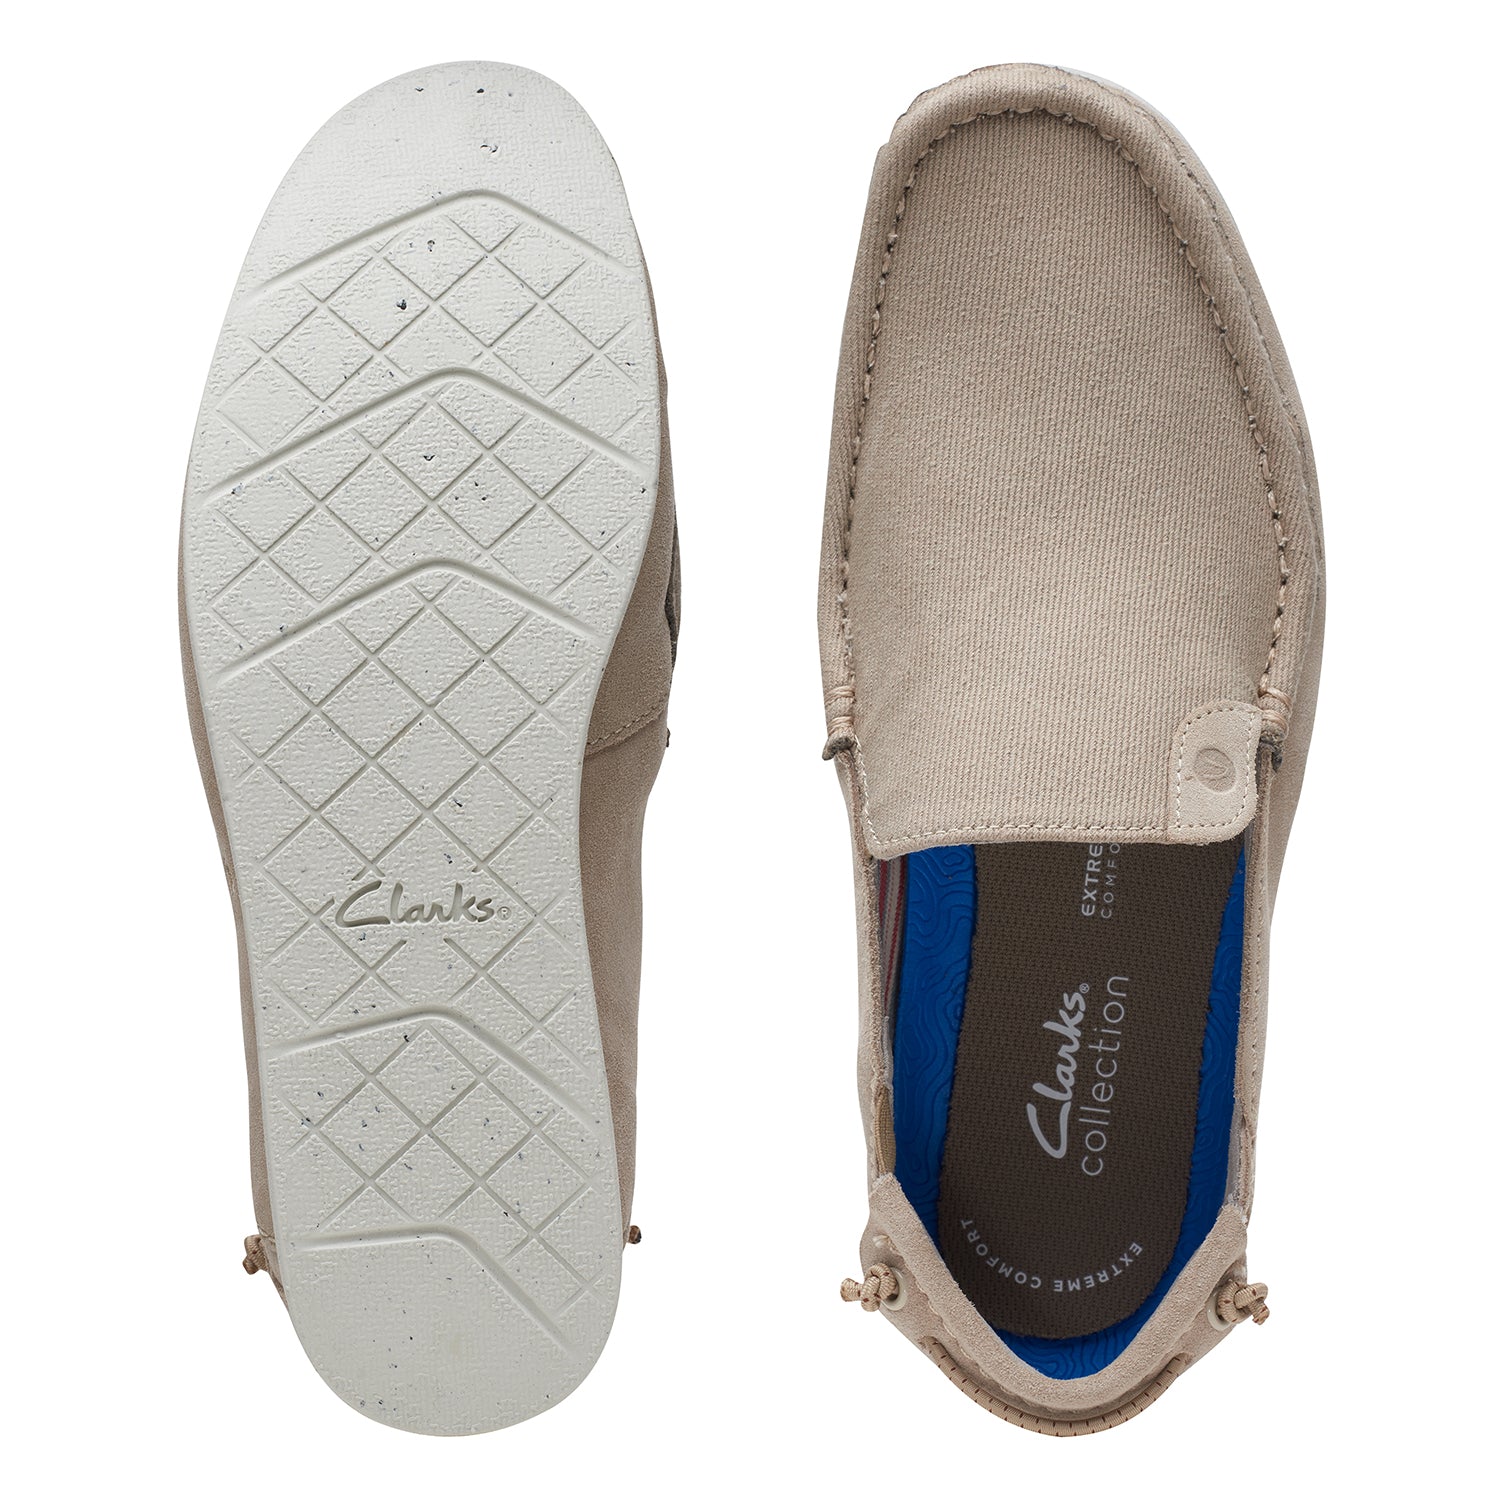 Clarks Shacrelitestep Shoes - Sand - 261718077 - G Width (Standard Fit)